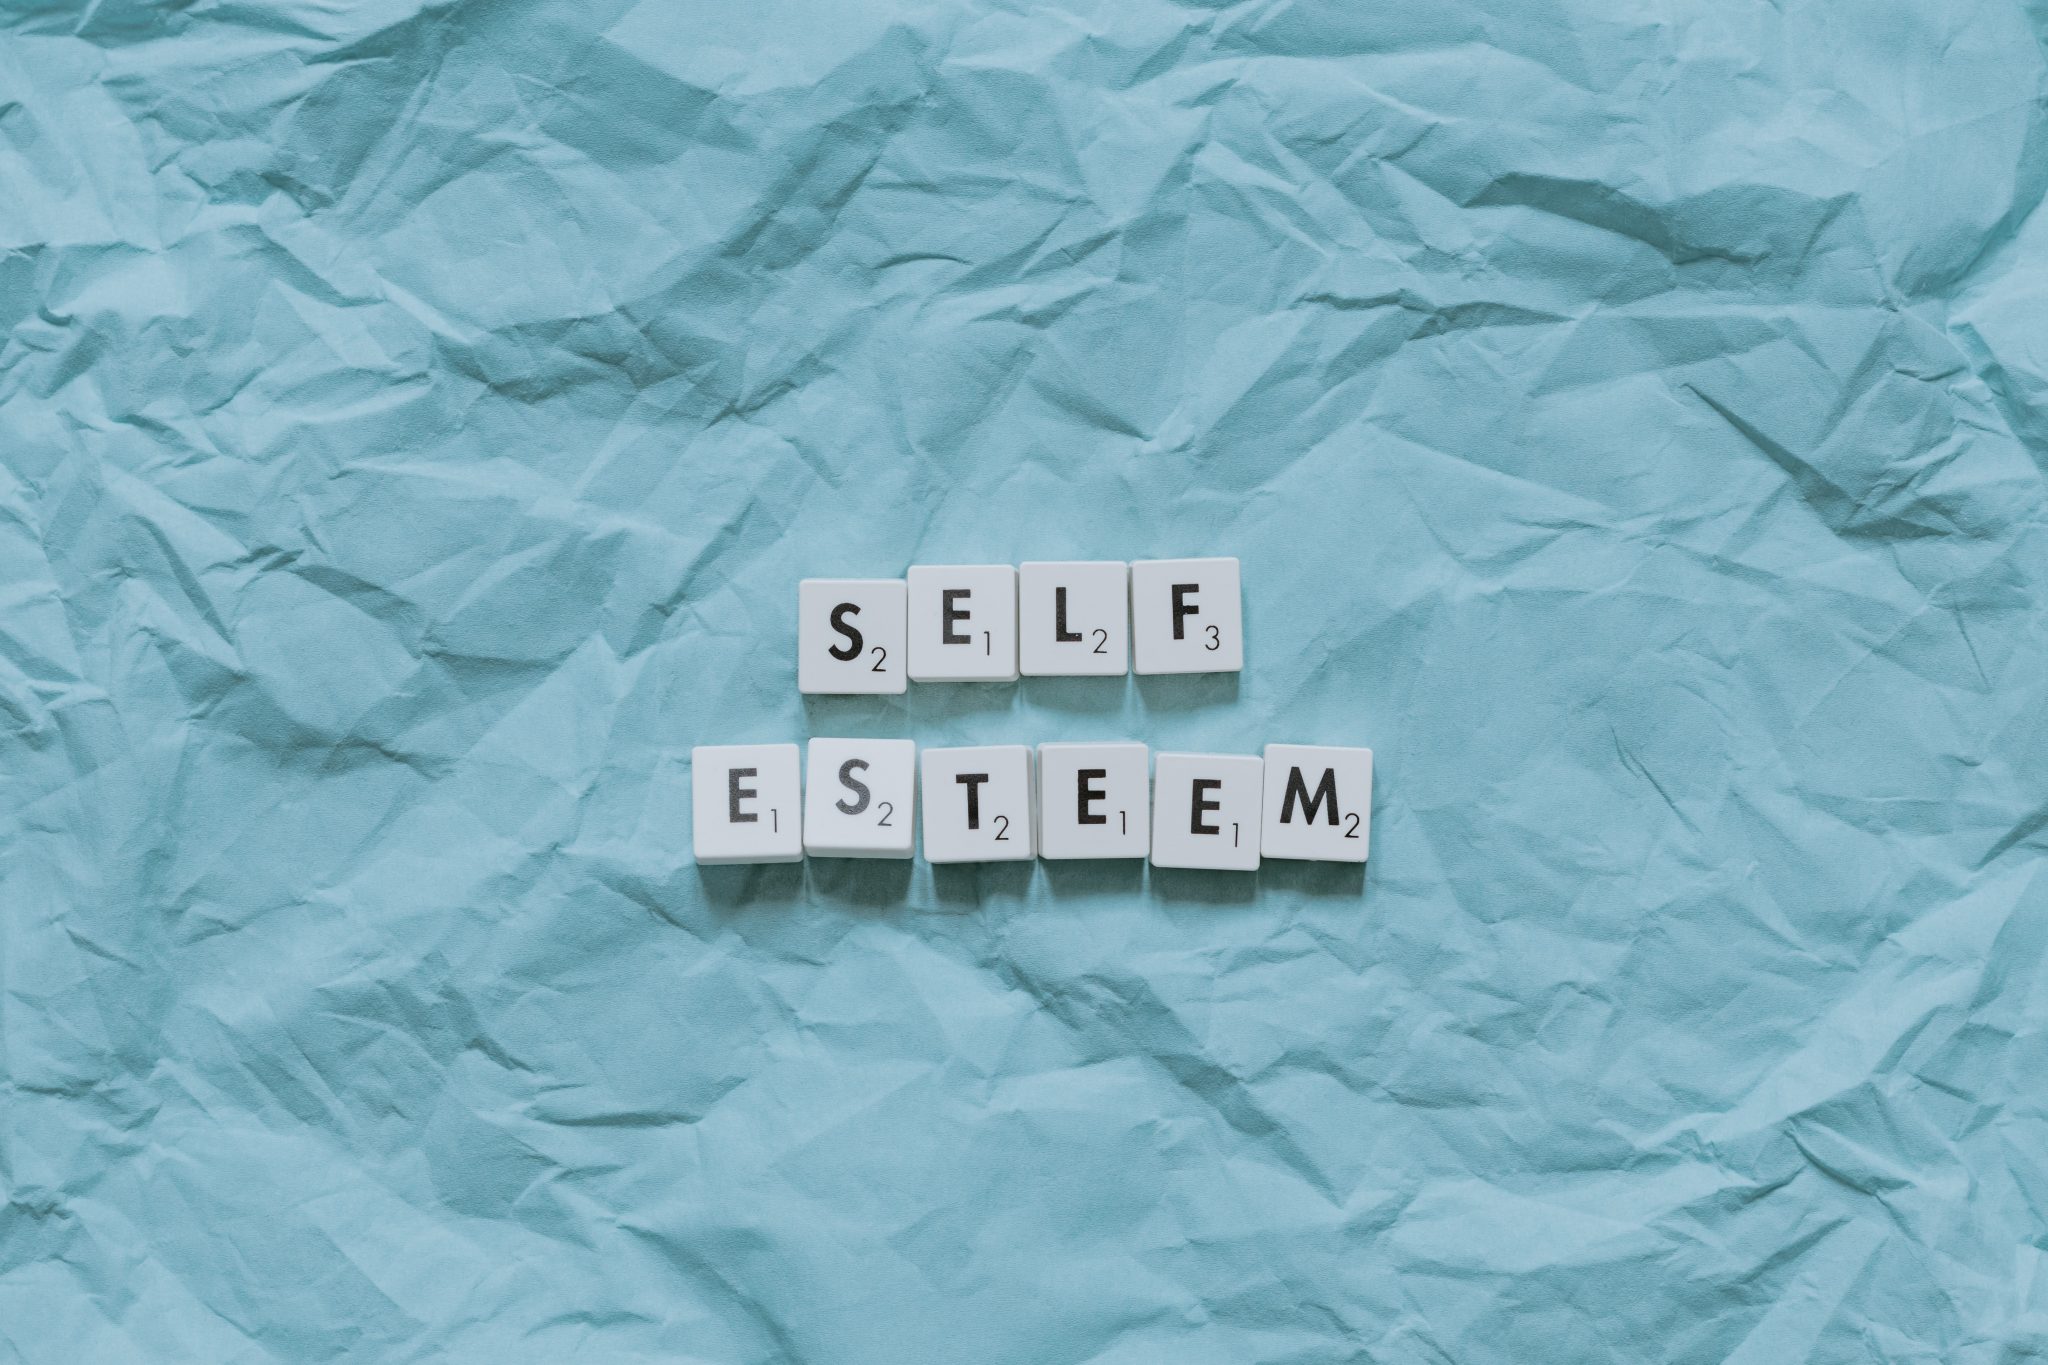 "self esteem" written in scrabble letters